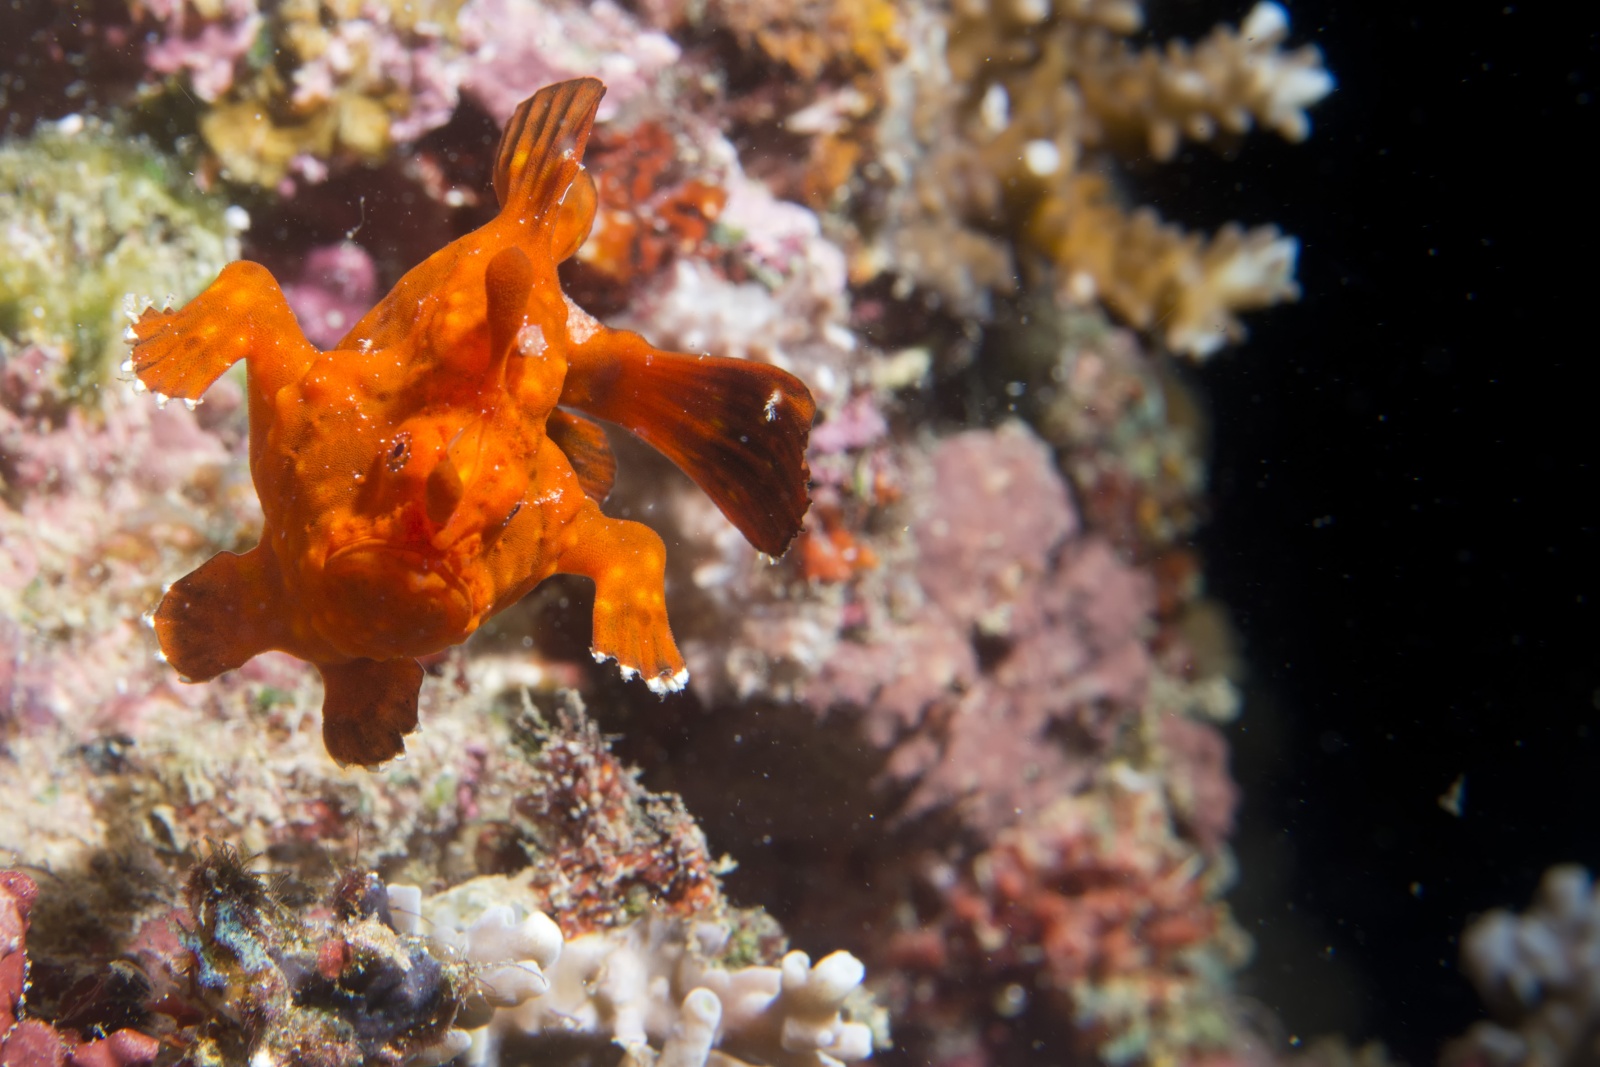 100 Metri Rana - Un piccolissimo pesce rana rosso balza da una roccia ricordando lo scatto di un corridore.